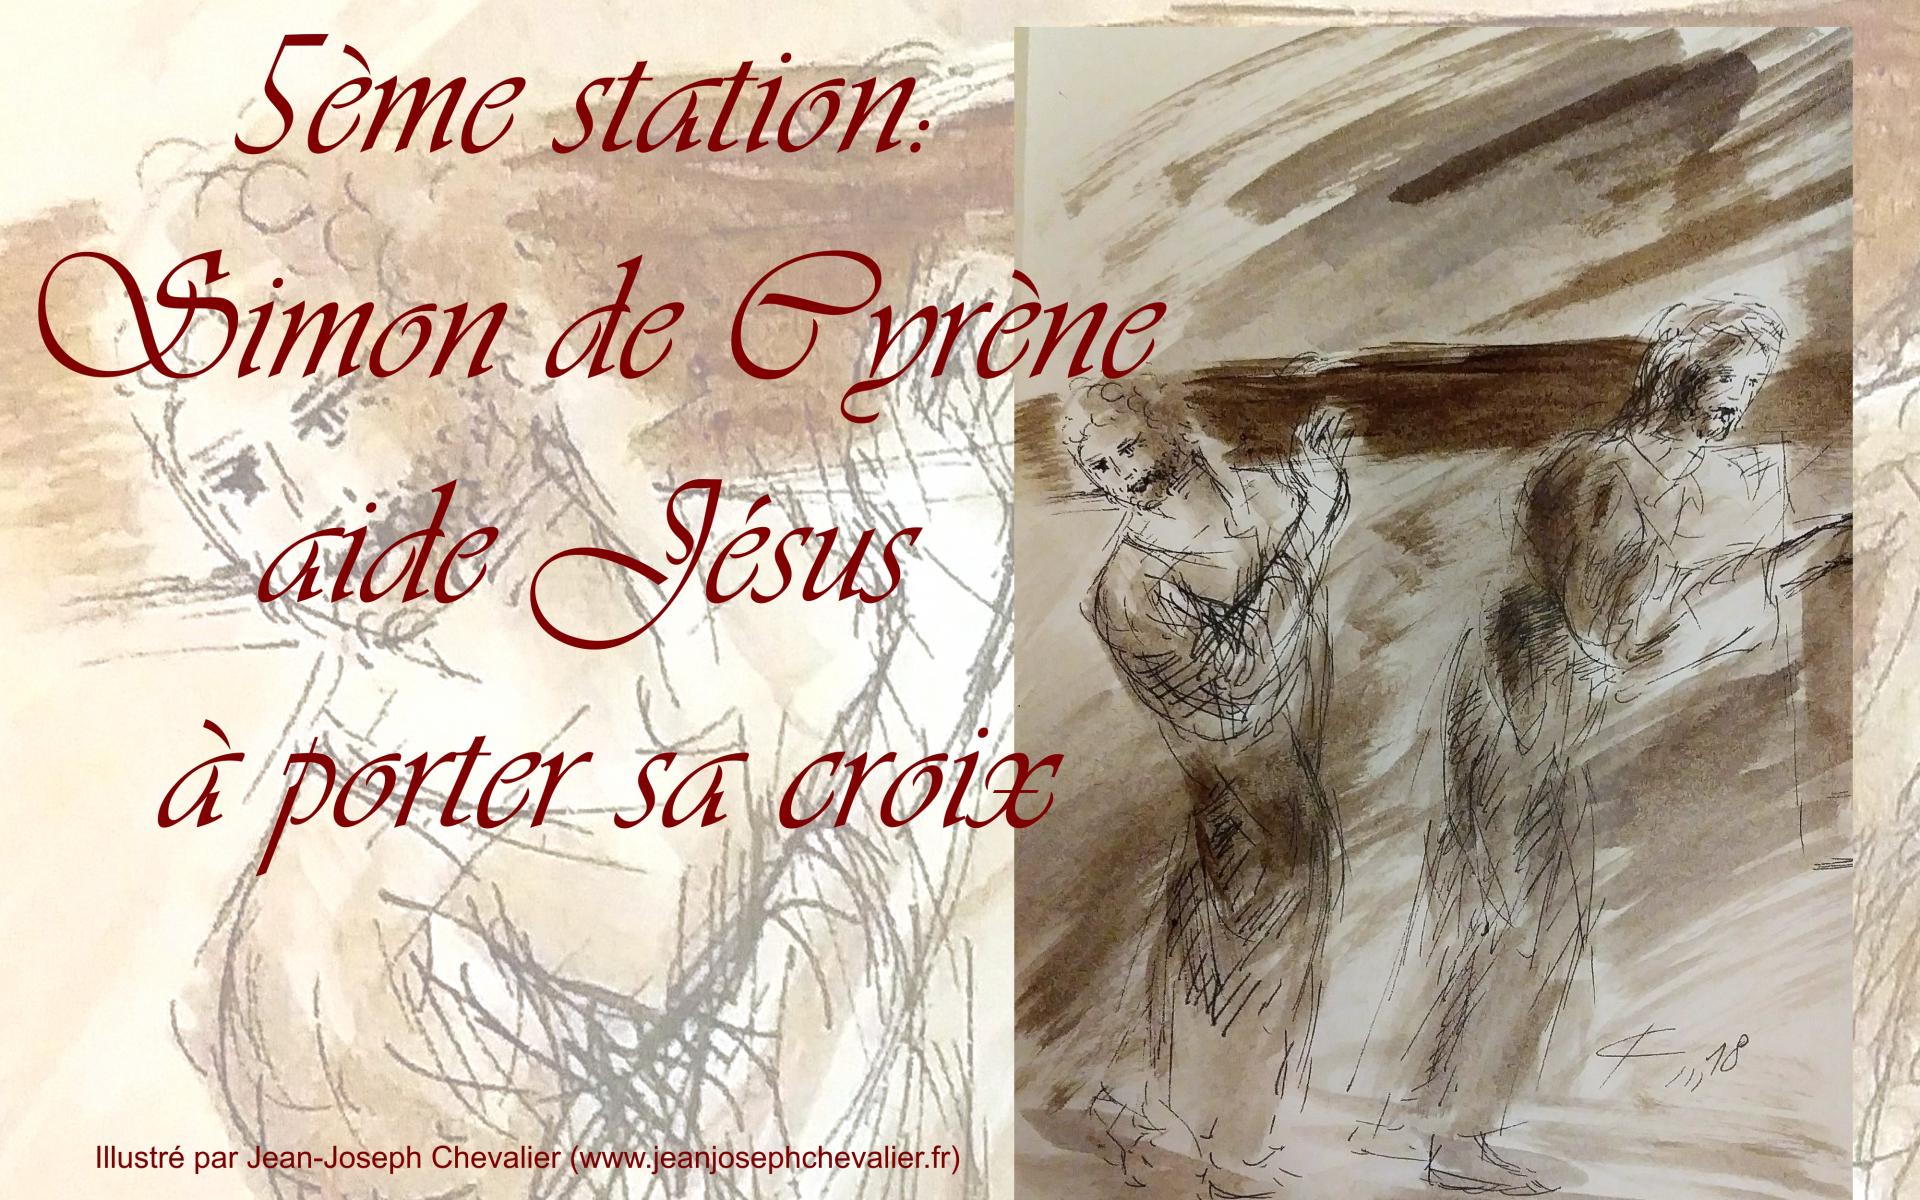 5 chemin de croix cinquieme station simon de cyrrene aide jesus a porter sa croix dessin au lavis de jean joseph chevalier v